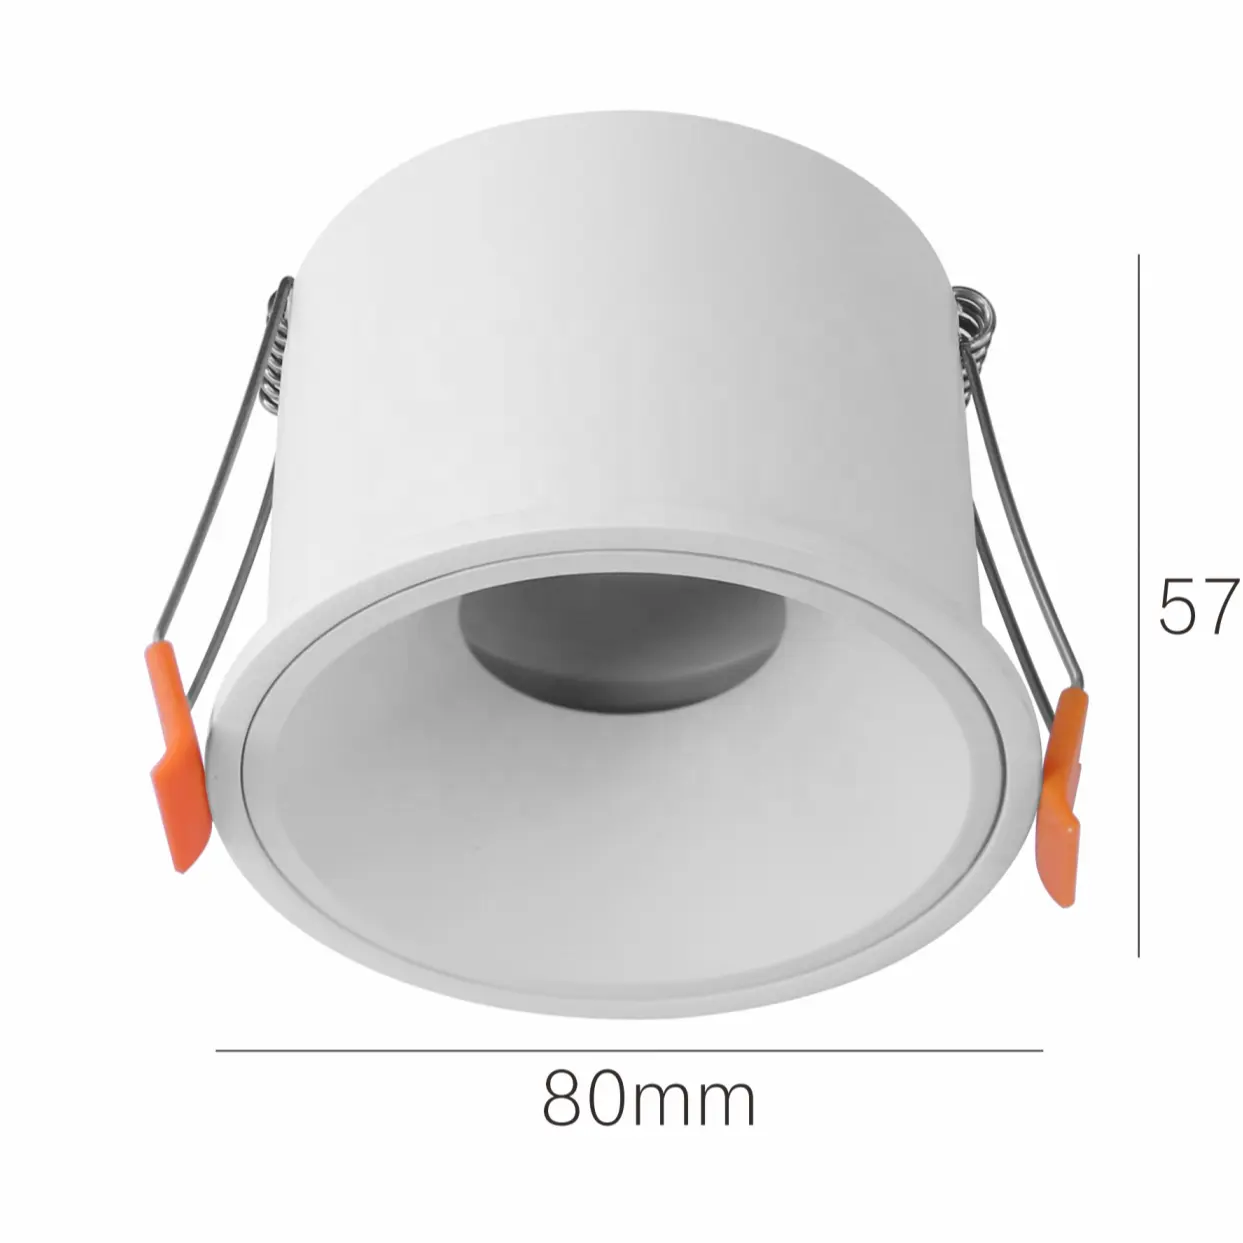 GUPO Bingkai GU10 LED Antiglare Dalam Dapat Disesuaikan Bentuk Bulat Potongan Sempit Aluminium Tersembunyi Kualitas Tinggi Baru